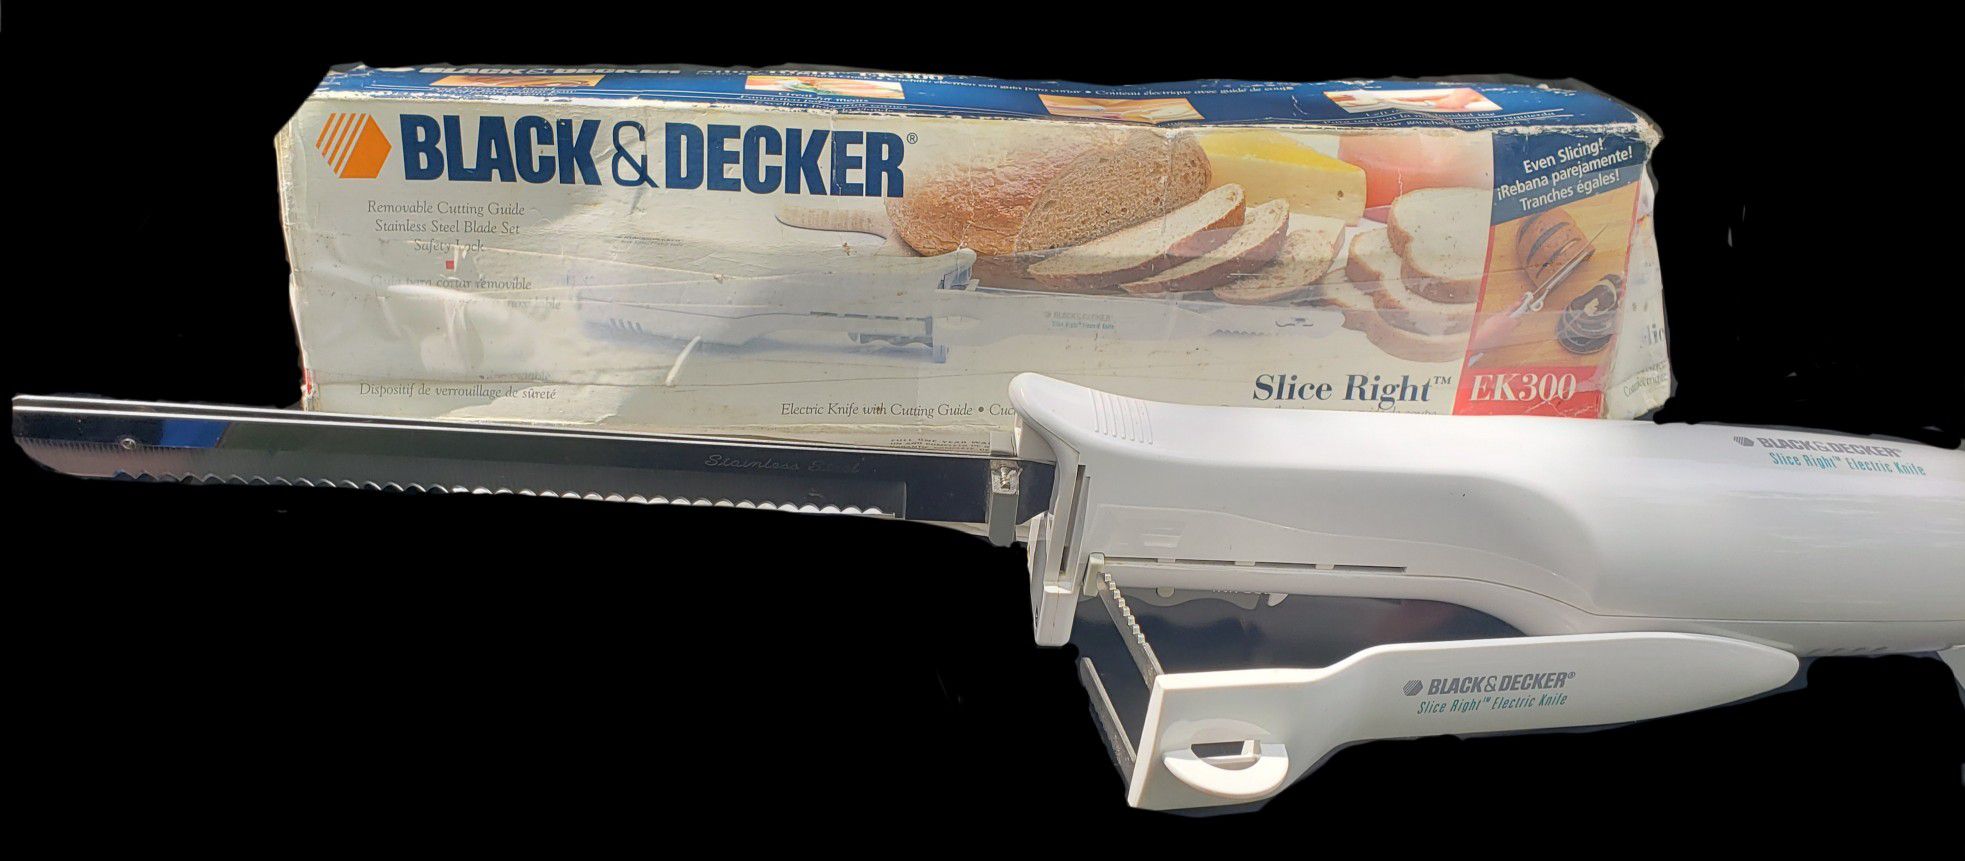 Black & Decker Slice Right Electric Knife. Model EK300. for Sale in  Newberry, FL - OfferUp